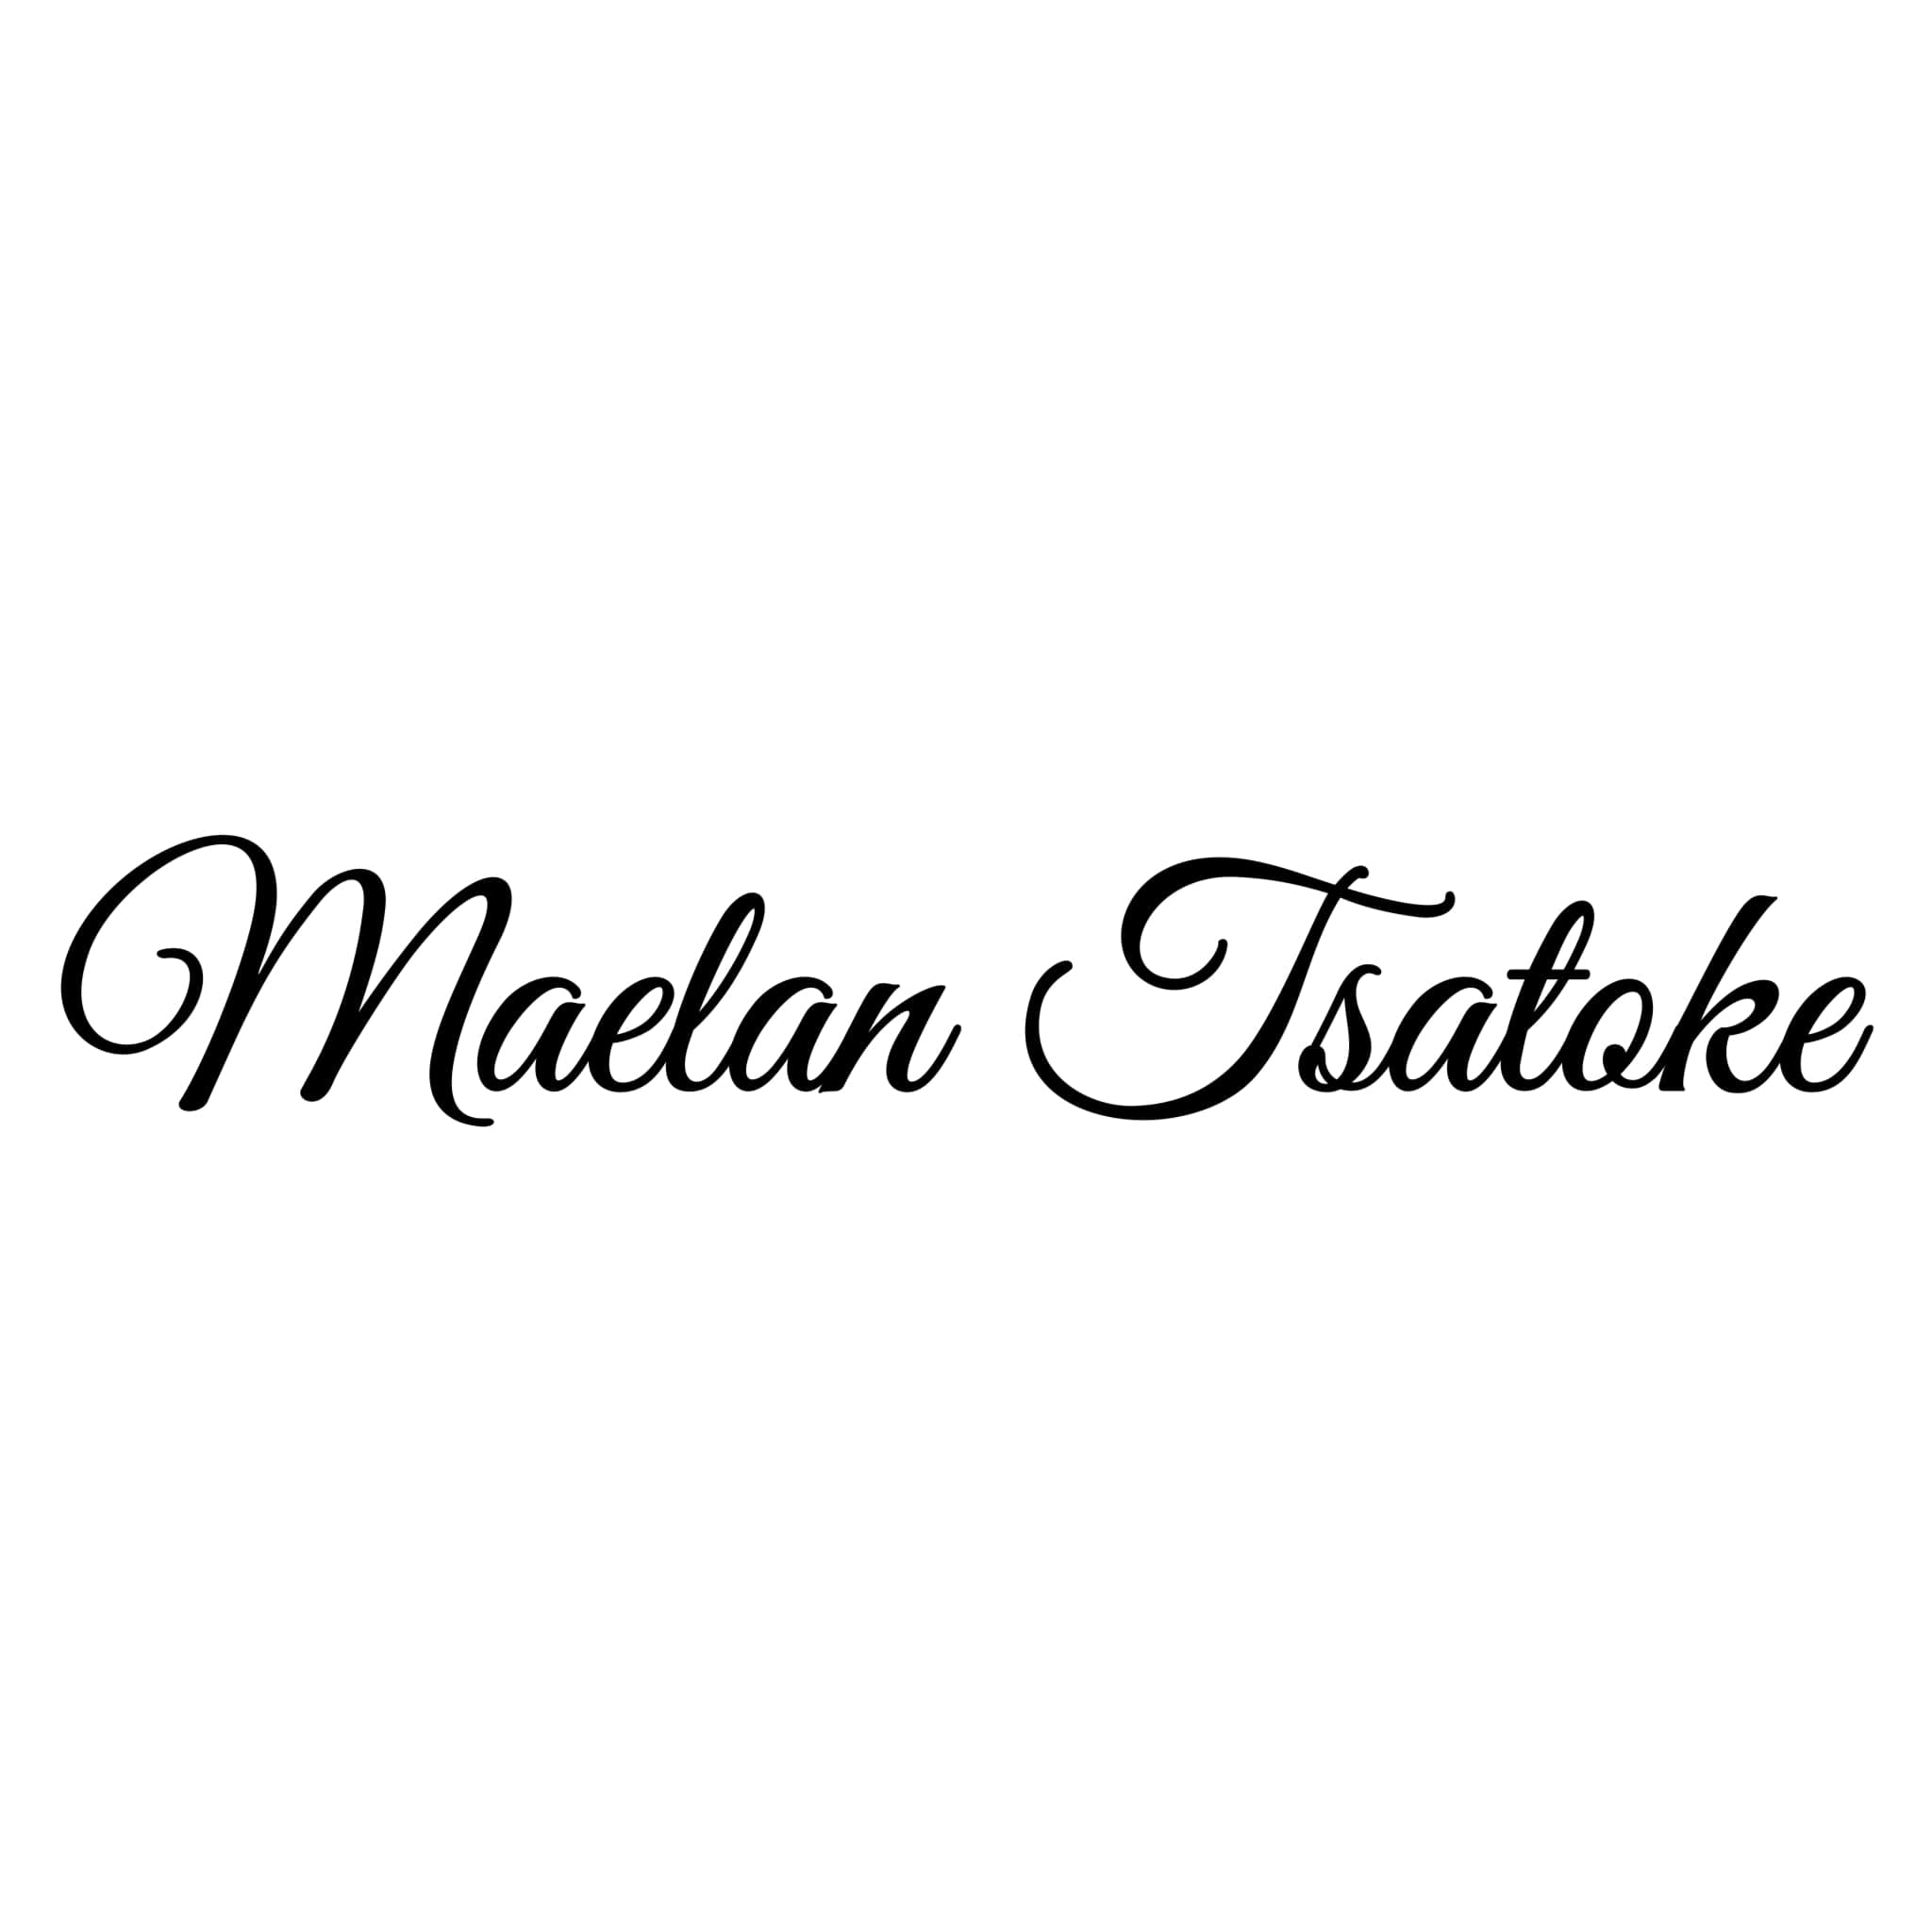 Maelan Tsatoke